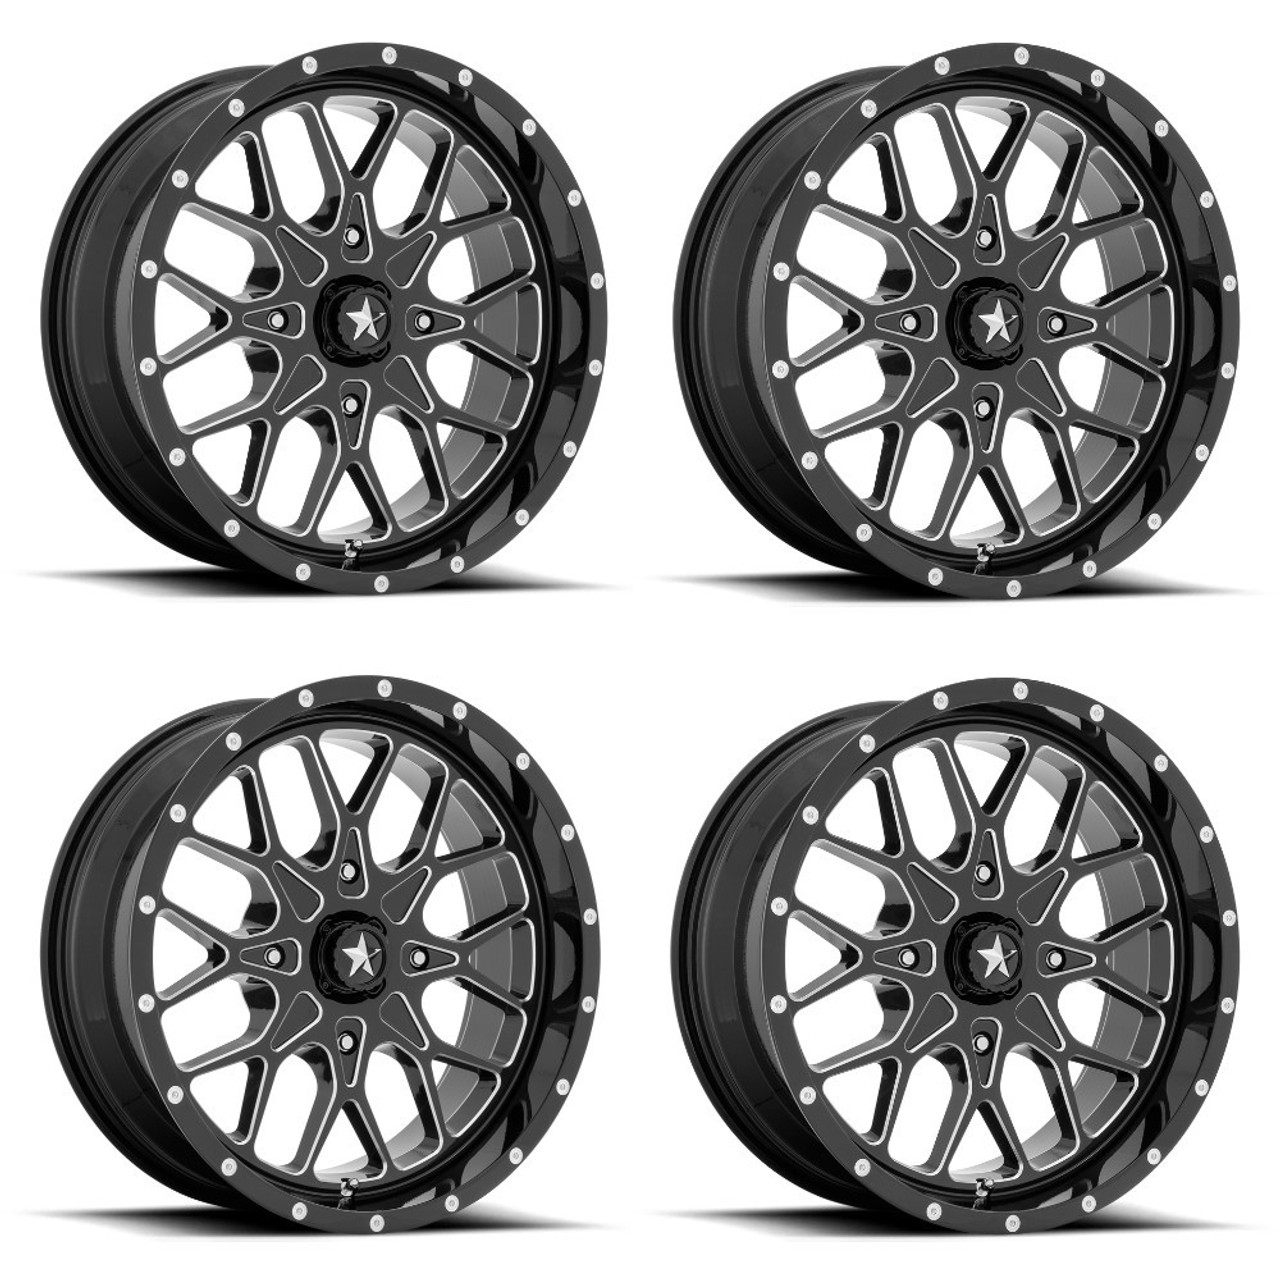 Set 4 MSA Offroad M45 Portal 22x7 4x156 Black Milled Wheels 22" 0mm Rims